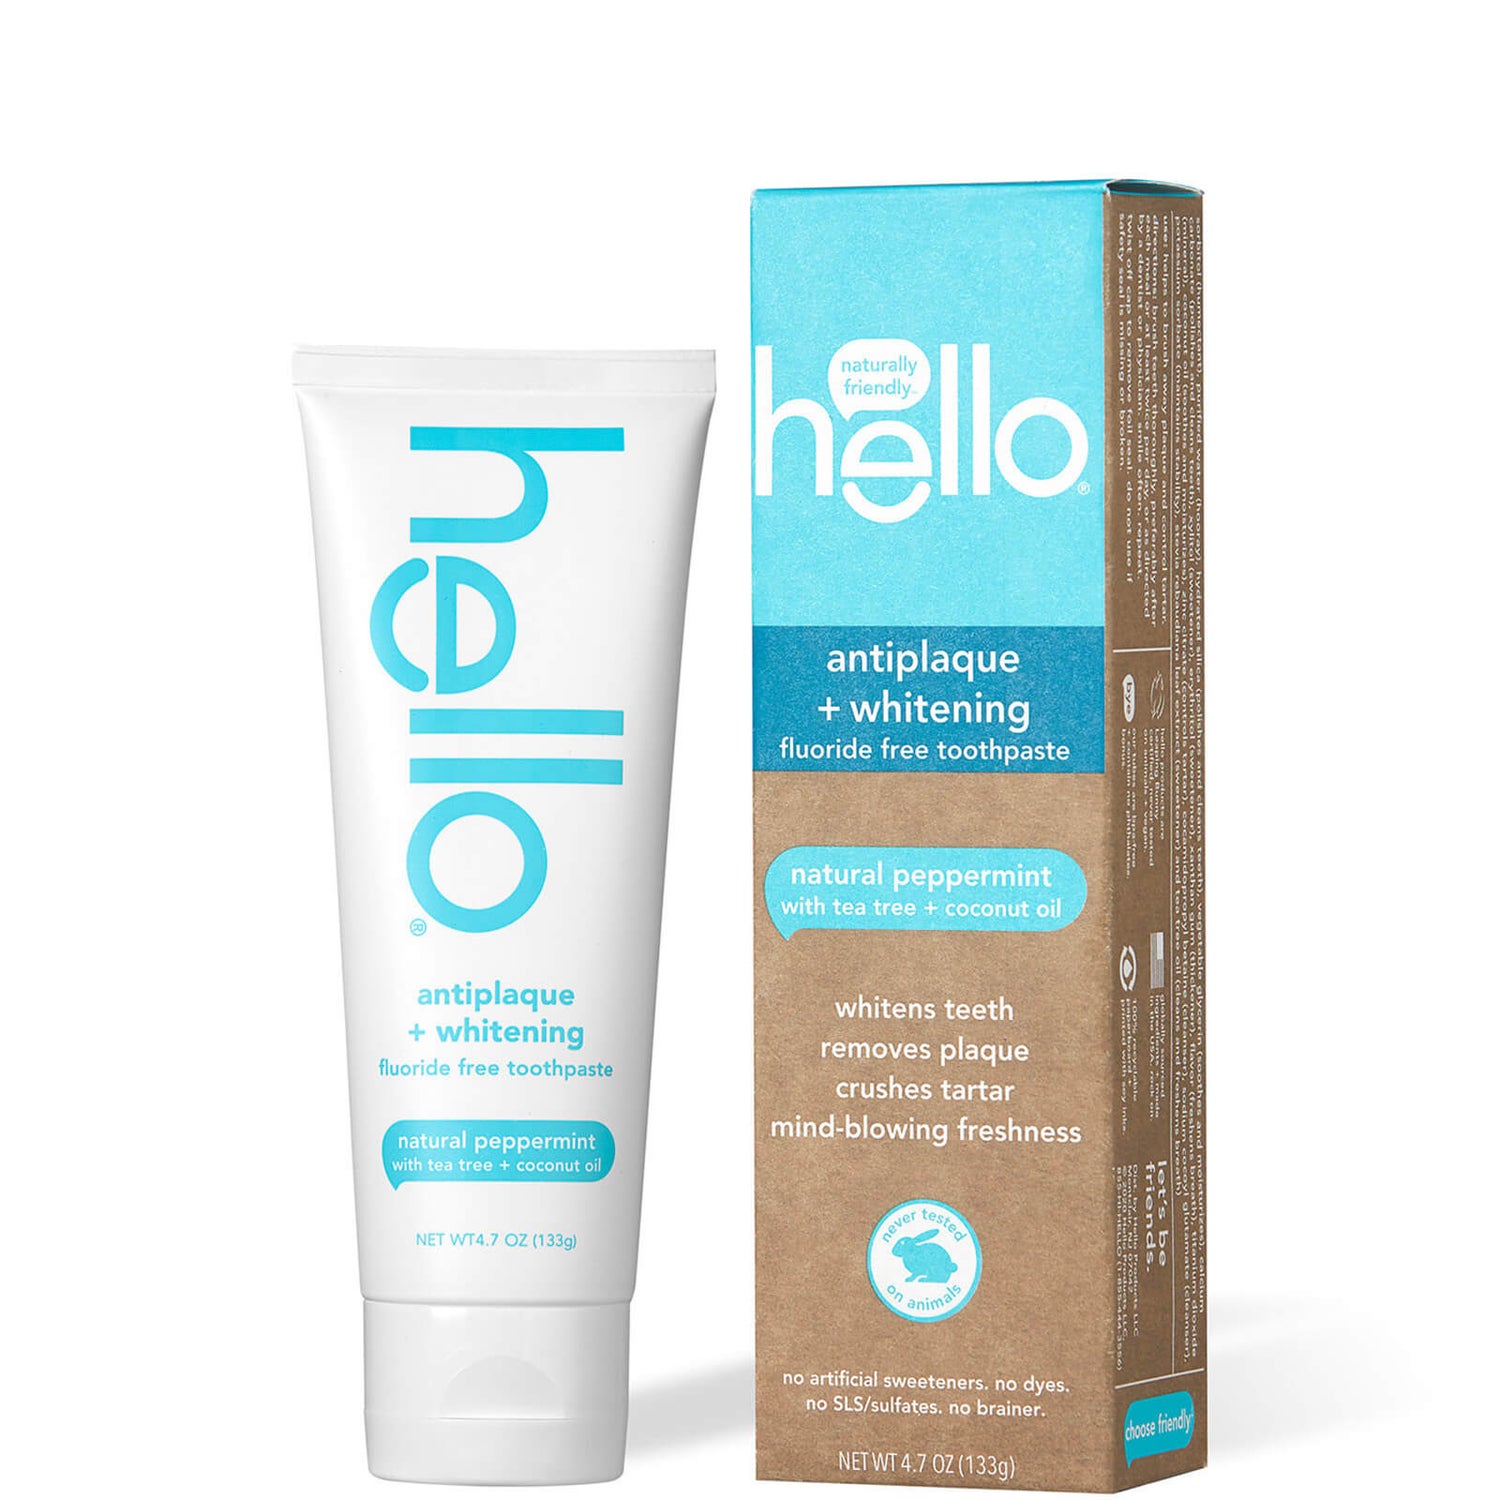 hello Antiplaque and Whitening Toothpaste 4.7 oz